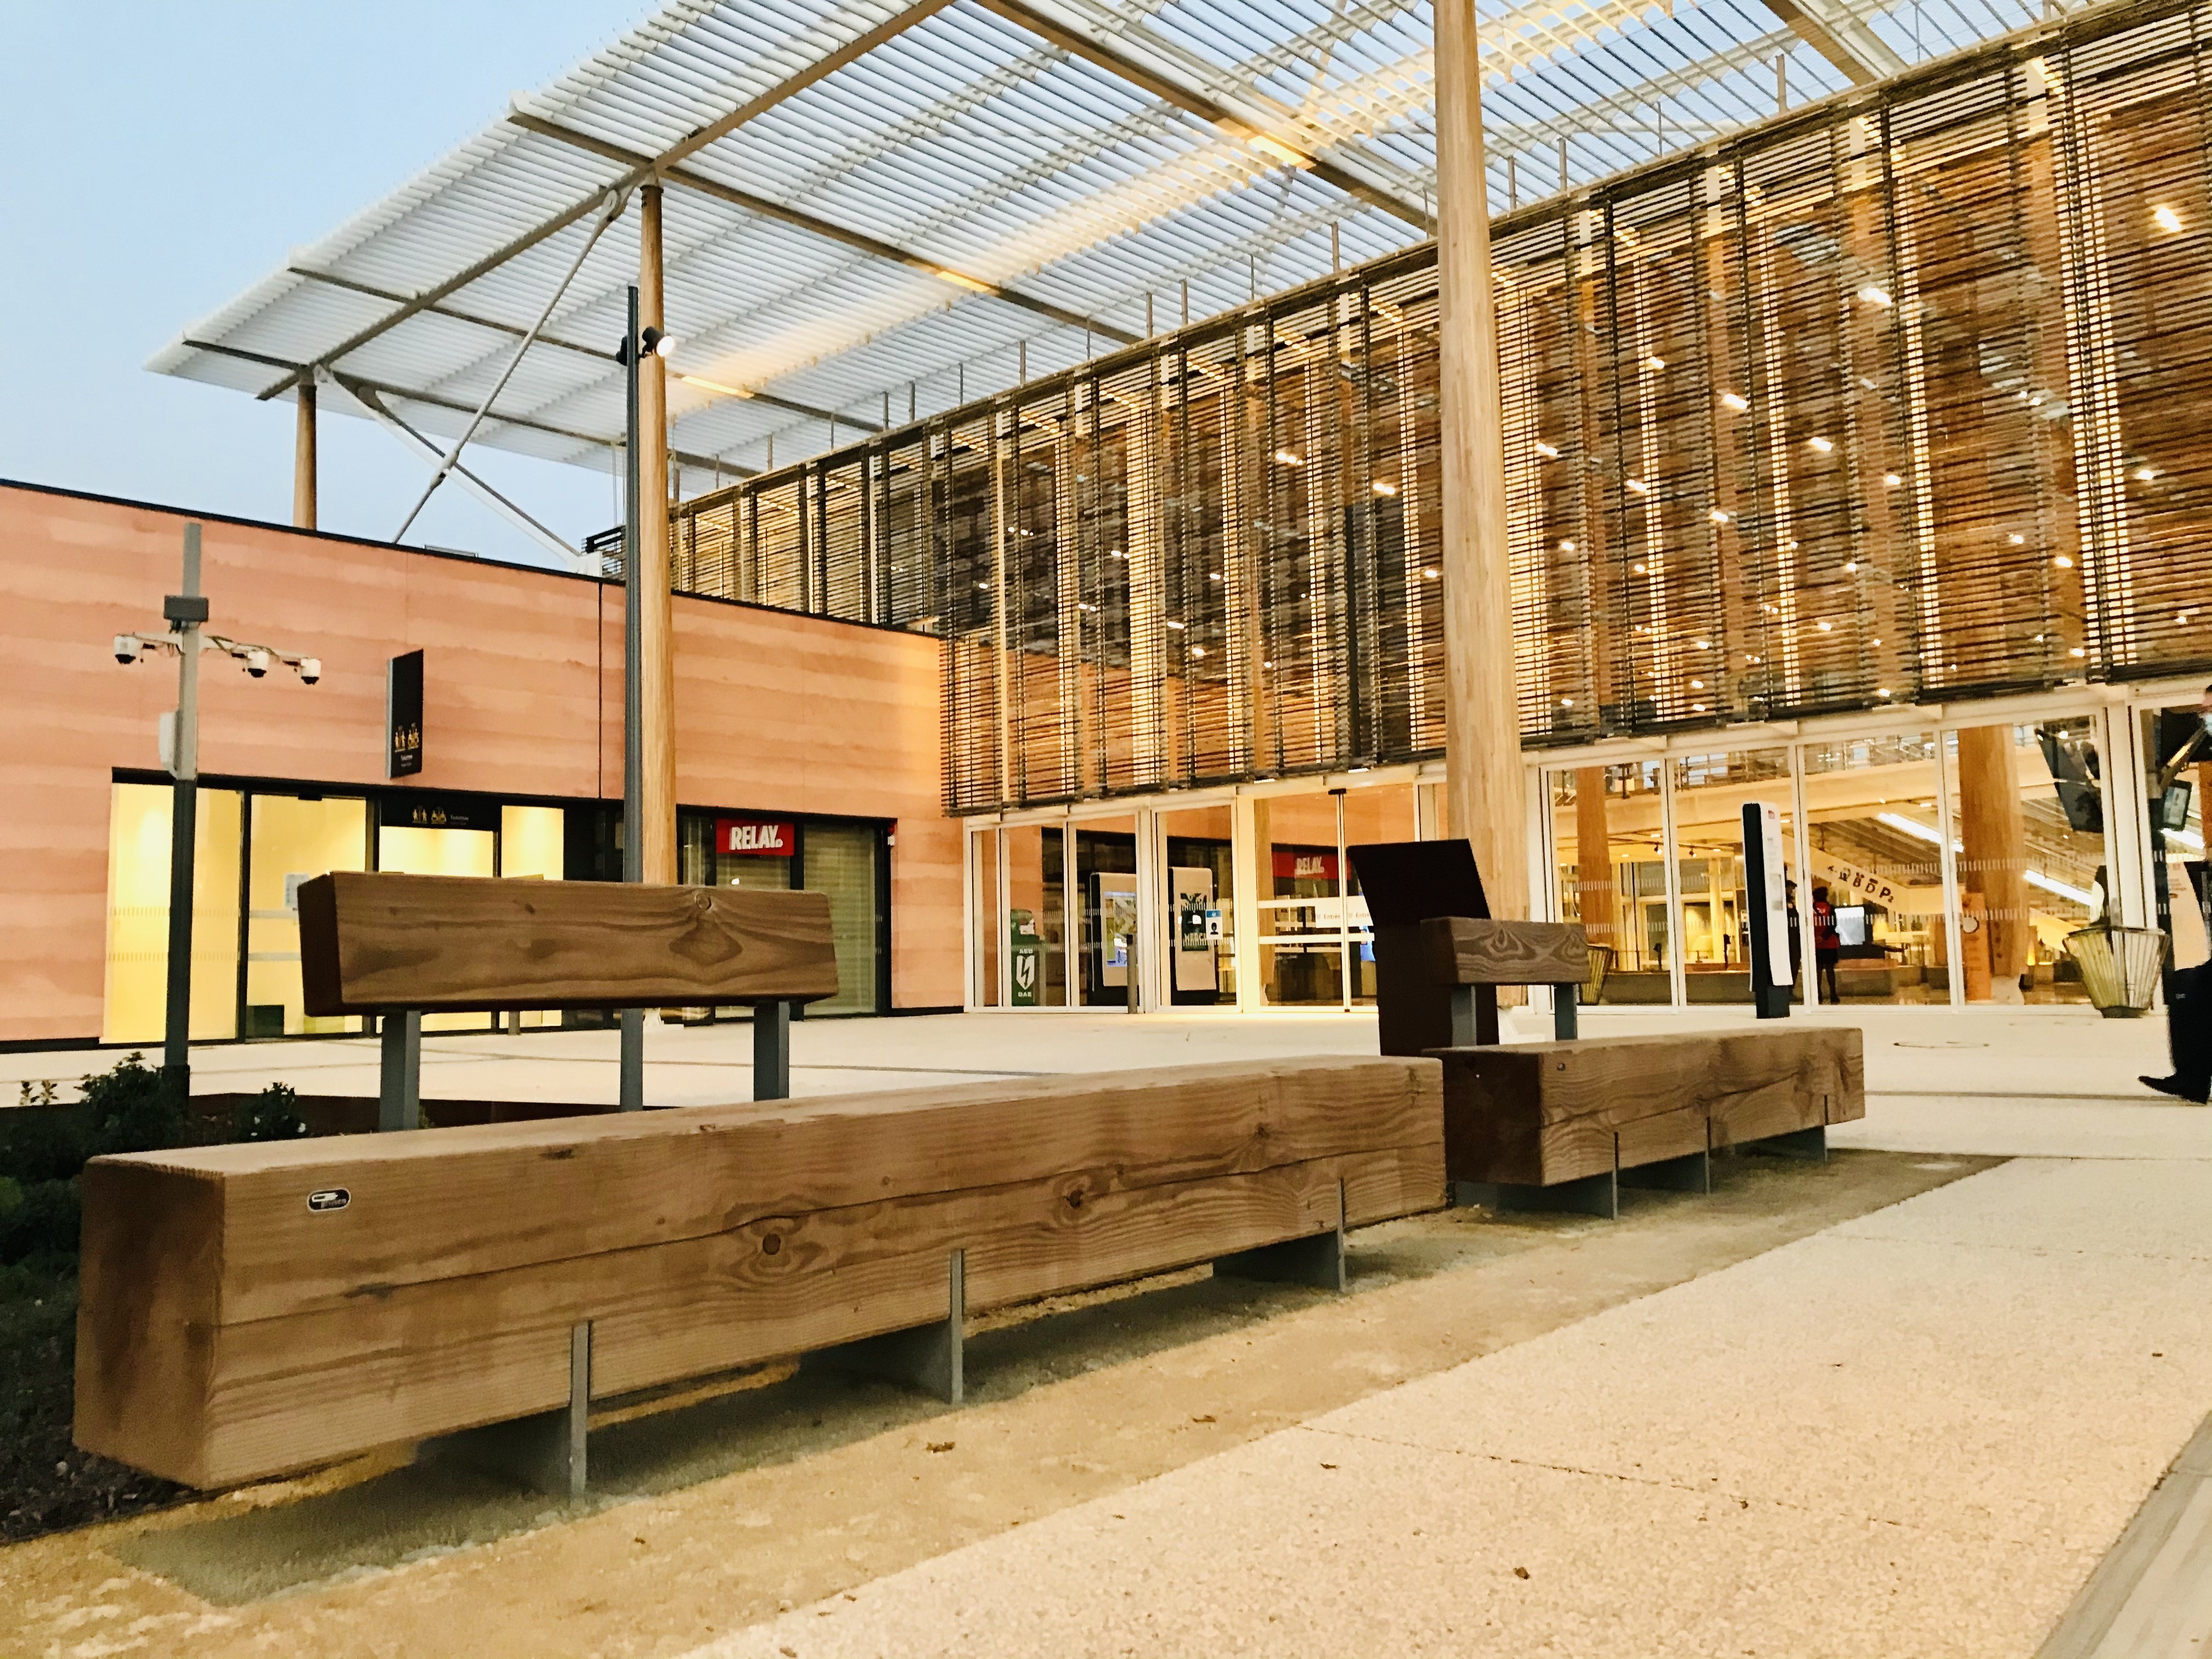 Gare de Nime - Aménagement urbain